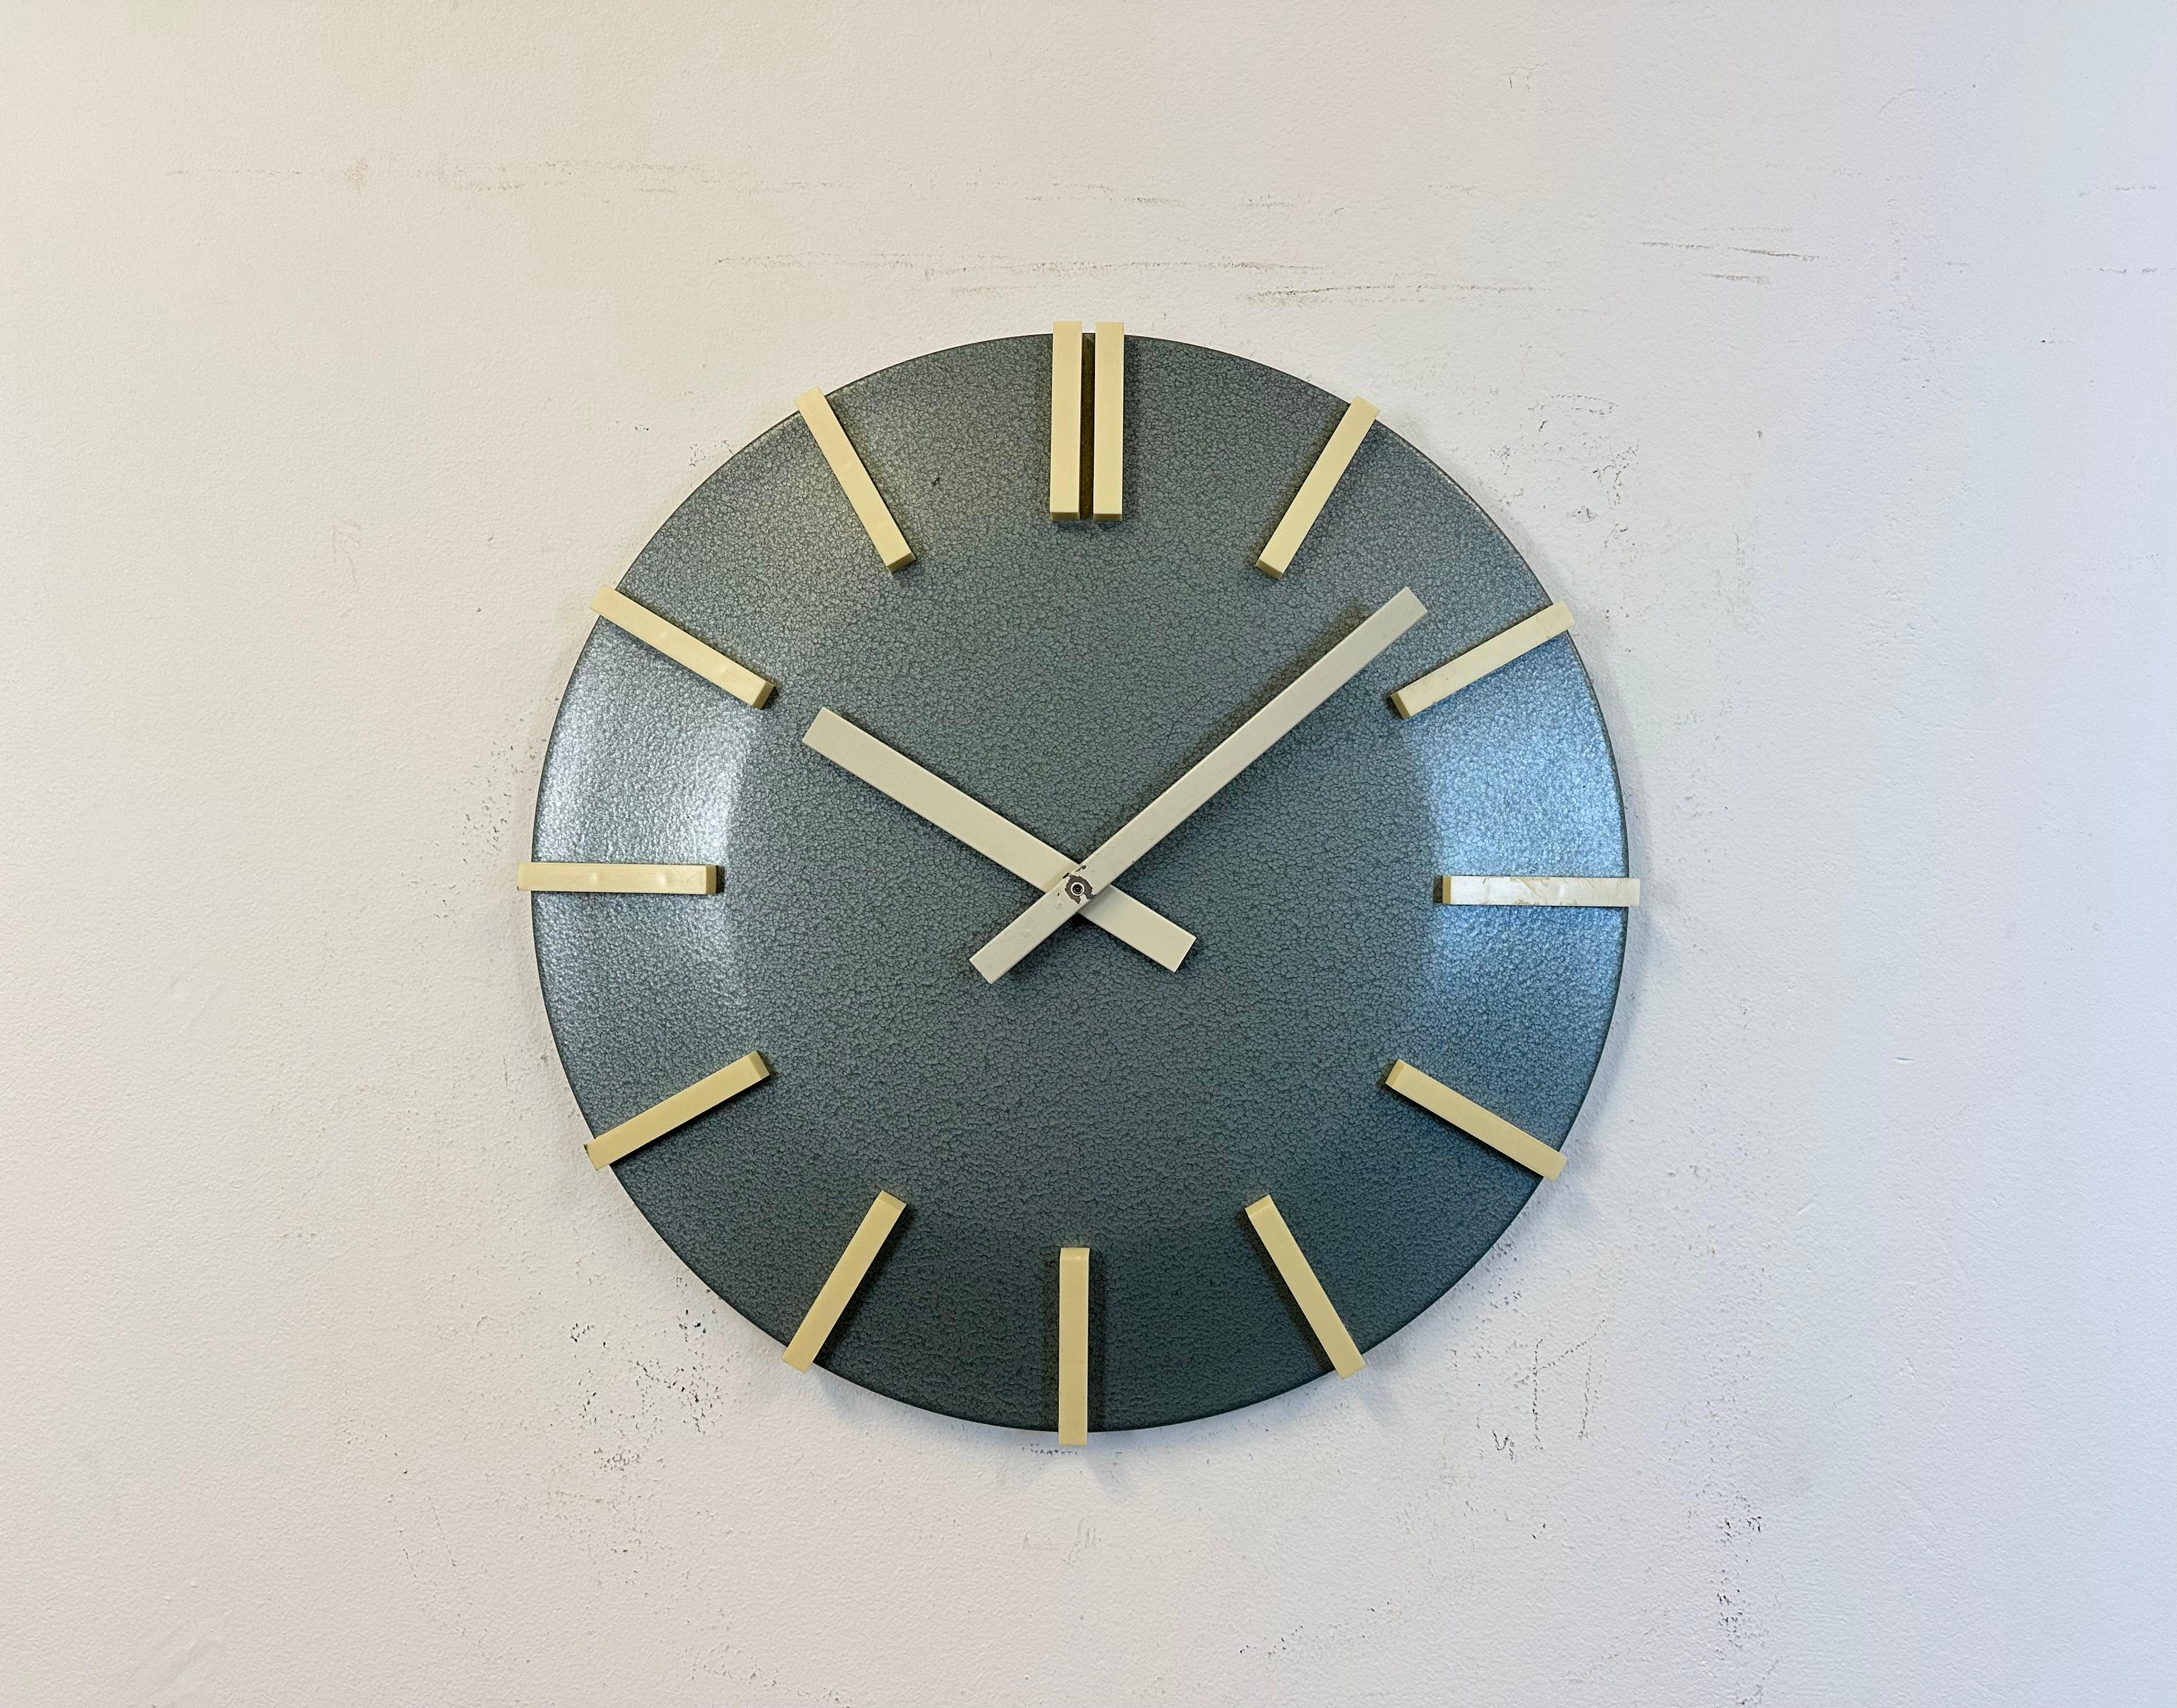 Horloge murale de bureau industrielle bleue grise peinte au marteau a été produite par Pragotron dans les années 1970 dans l'ancienne Tchécoslovaquie. Le cadran de l'horloge avec des chiffres en plastique blanc est en métal. Le diamètre est de 40